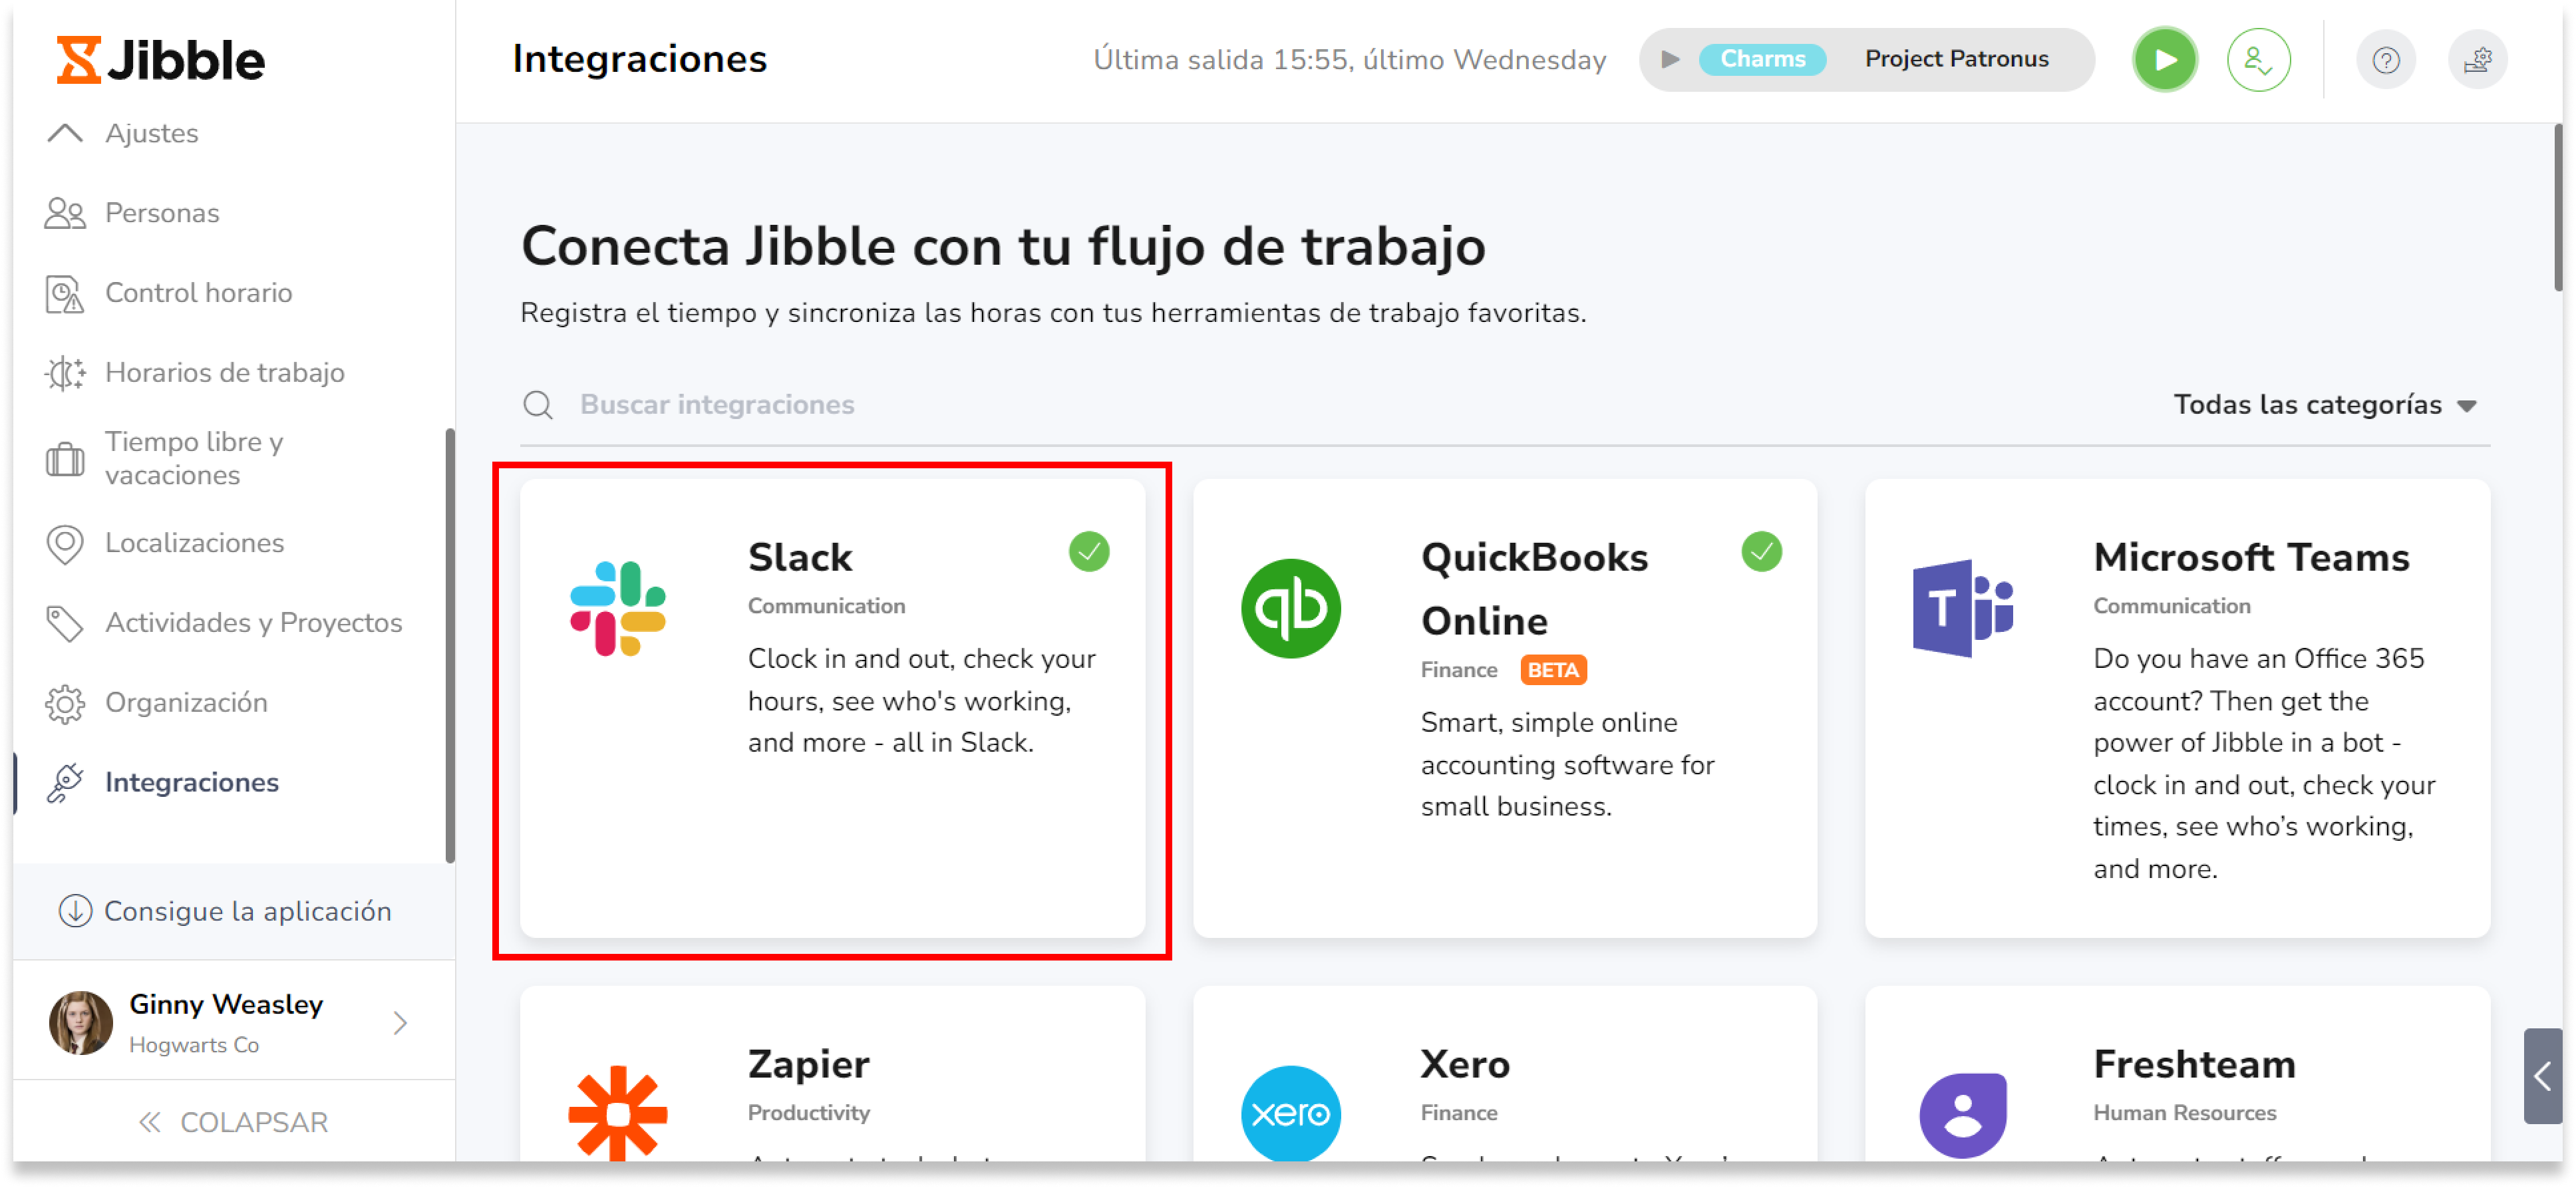 Slack es una gran manera de utilizar Jibble, y es gratis. Solo tienes que activar el bot de Slack para empezar a controlar el tiempo directamente desde tu espacio de trabajo de Slack.